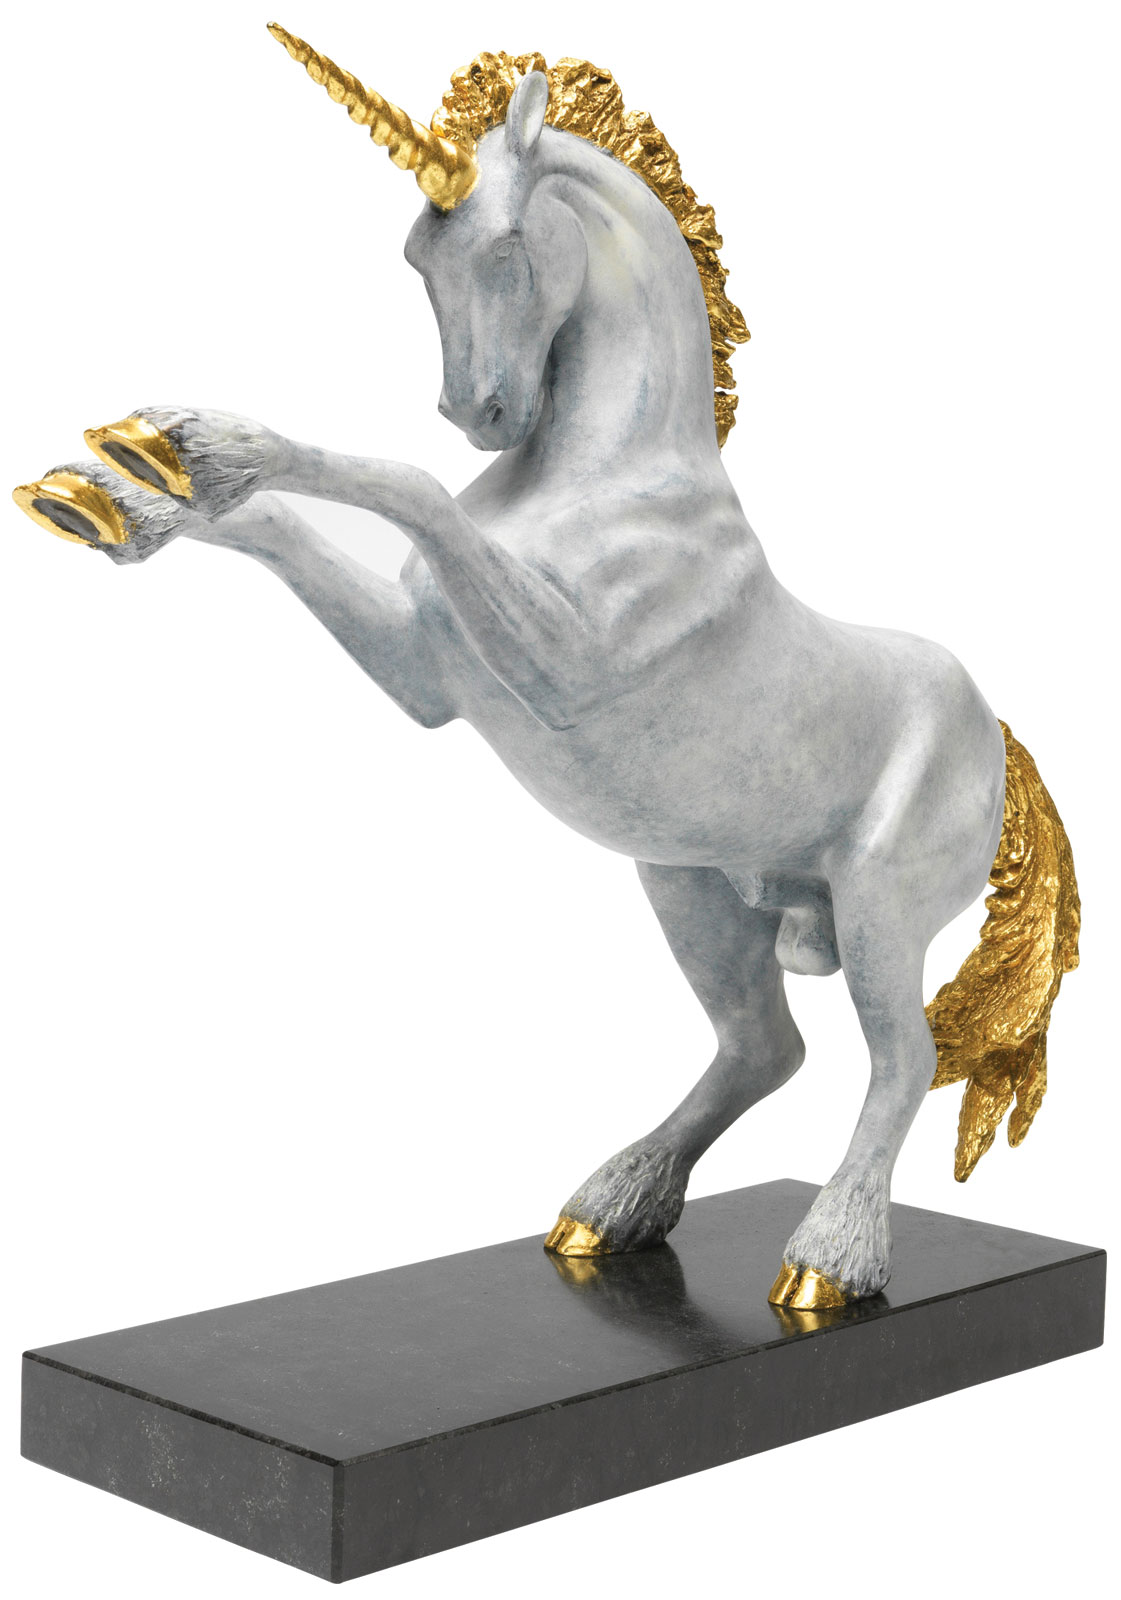 Skulptur "Einhorn" (2015), Version Bronze weiß teilvergoldet von Joseph F. Askew